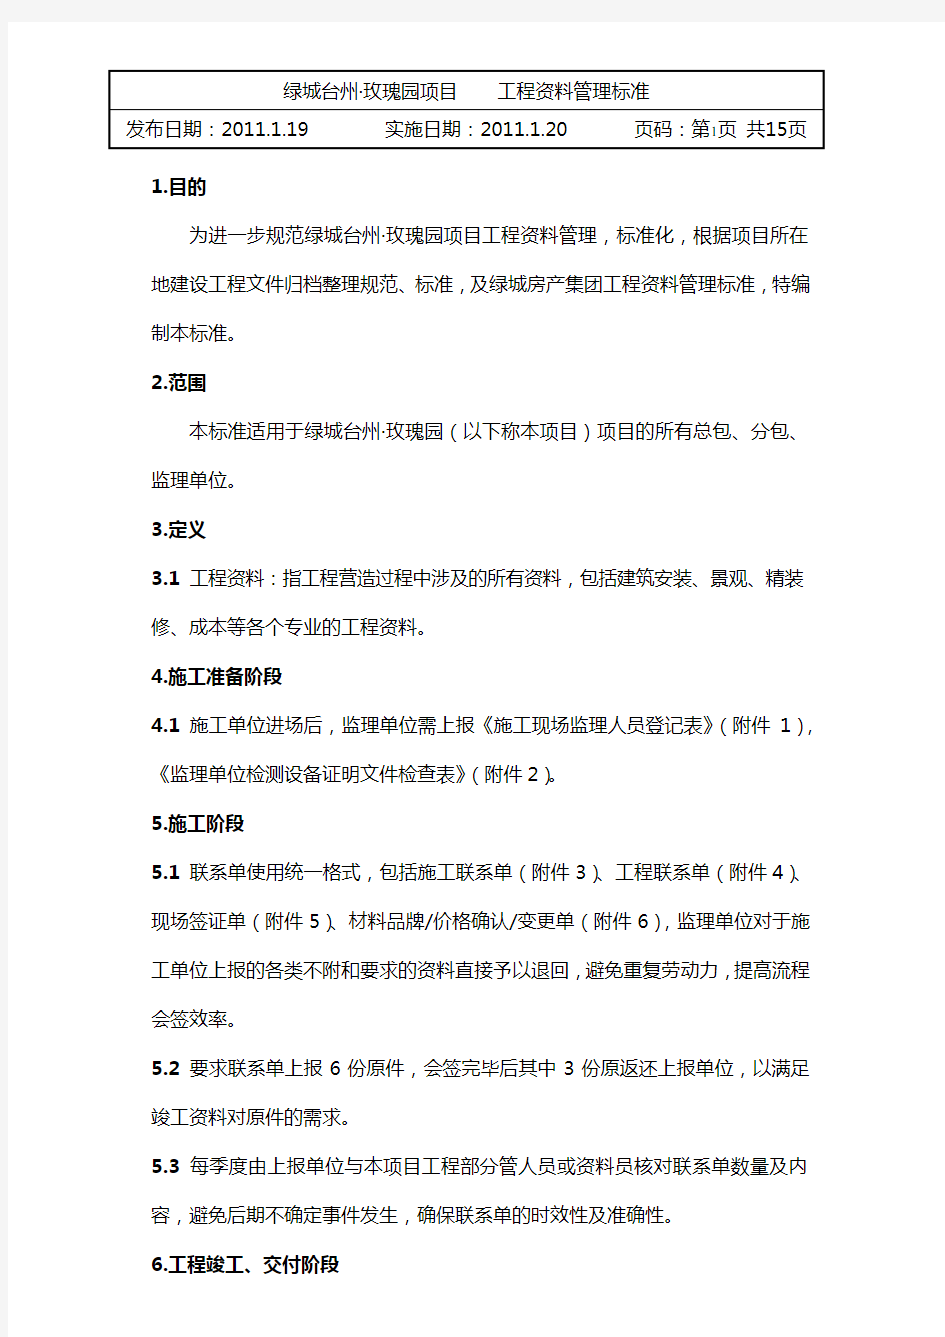 台州玫瑰园项目工程资料管理规定